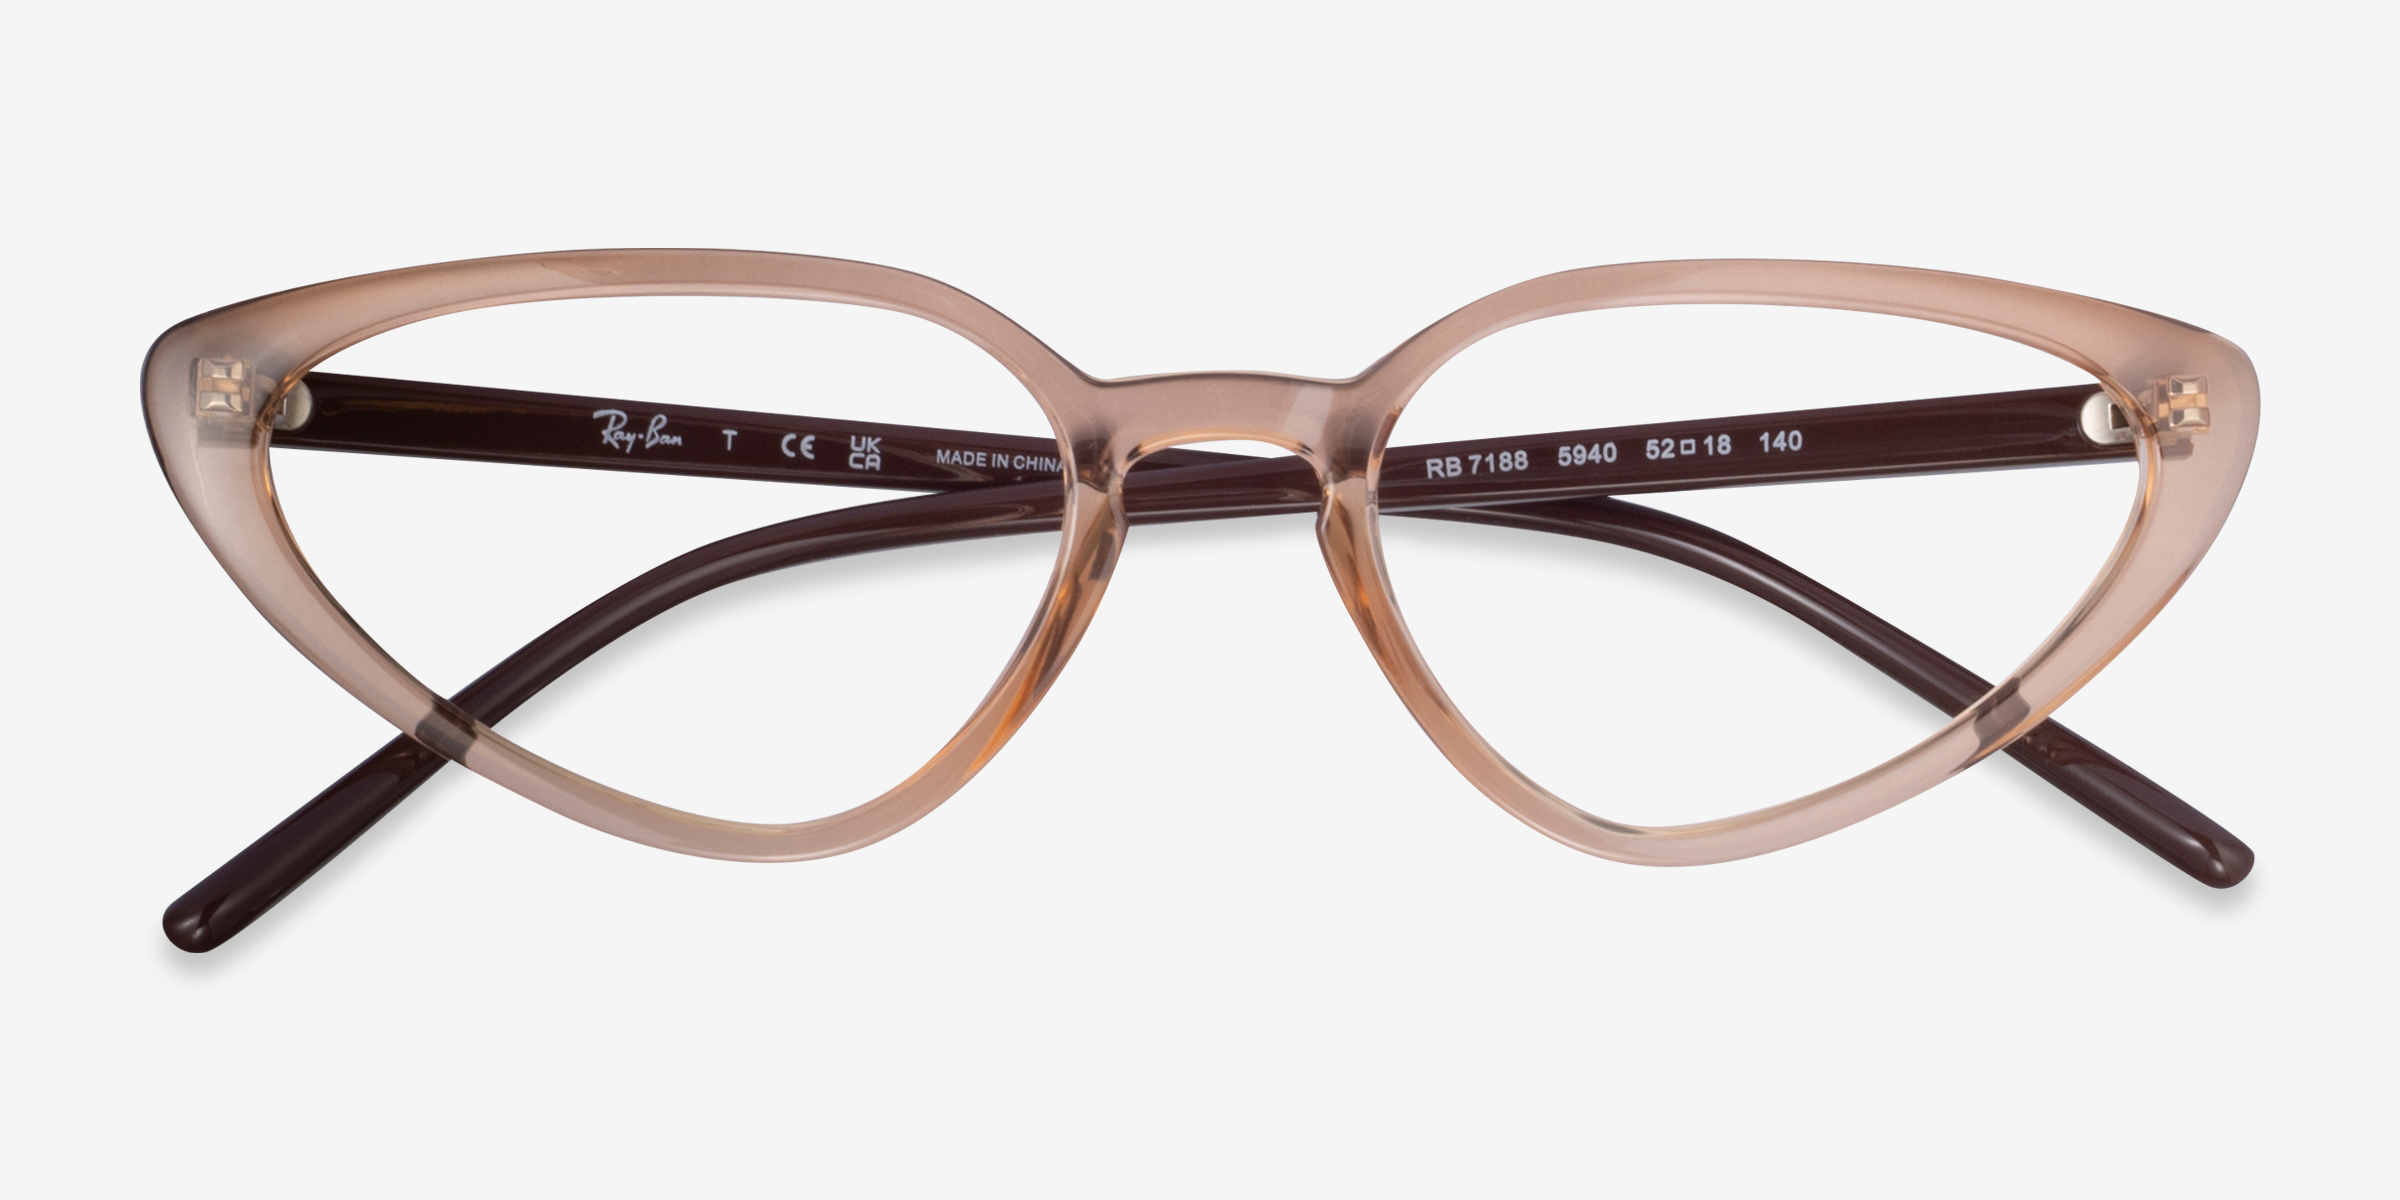 Ray-Ban RB7188 - Cat Eye Light Brown Frame Glasses For Women ...